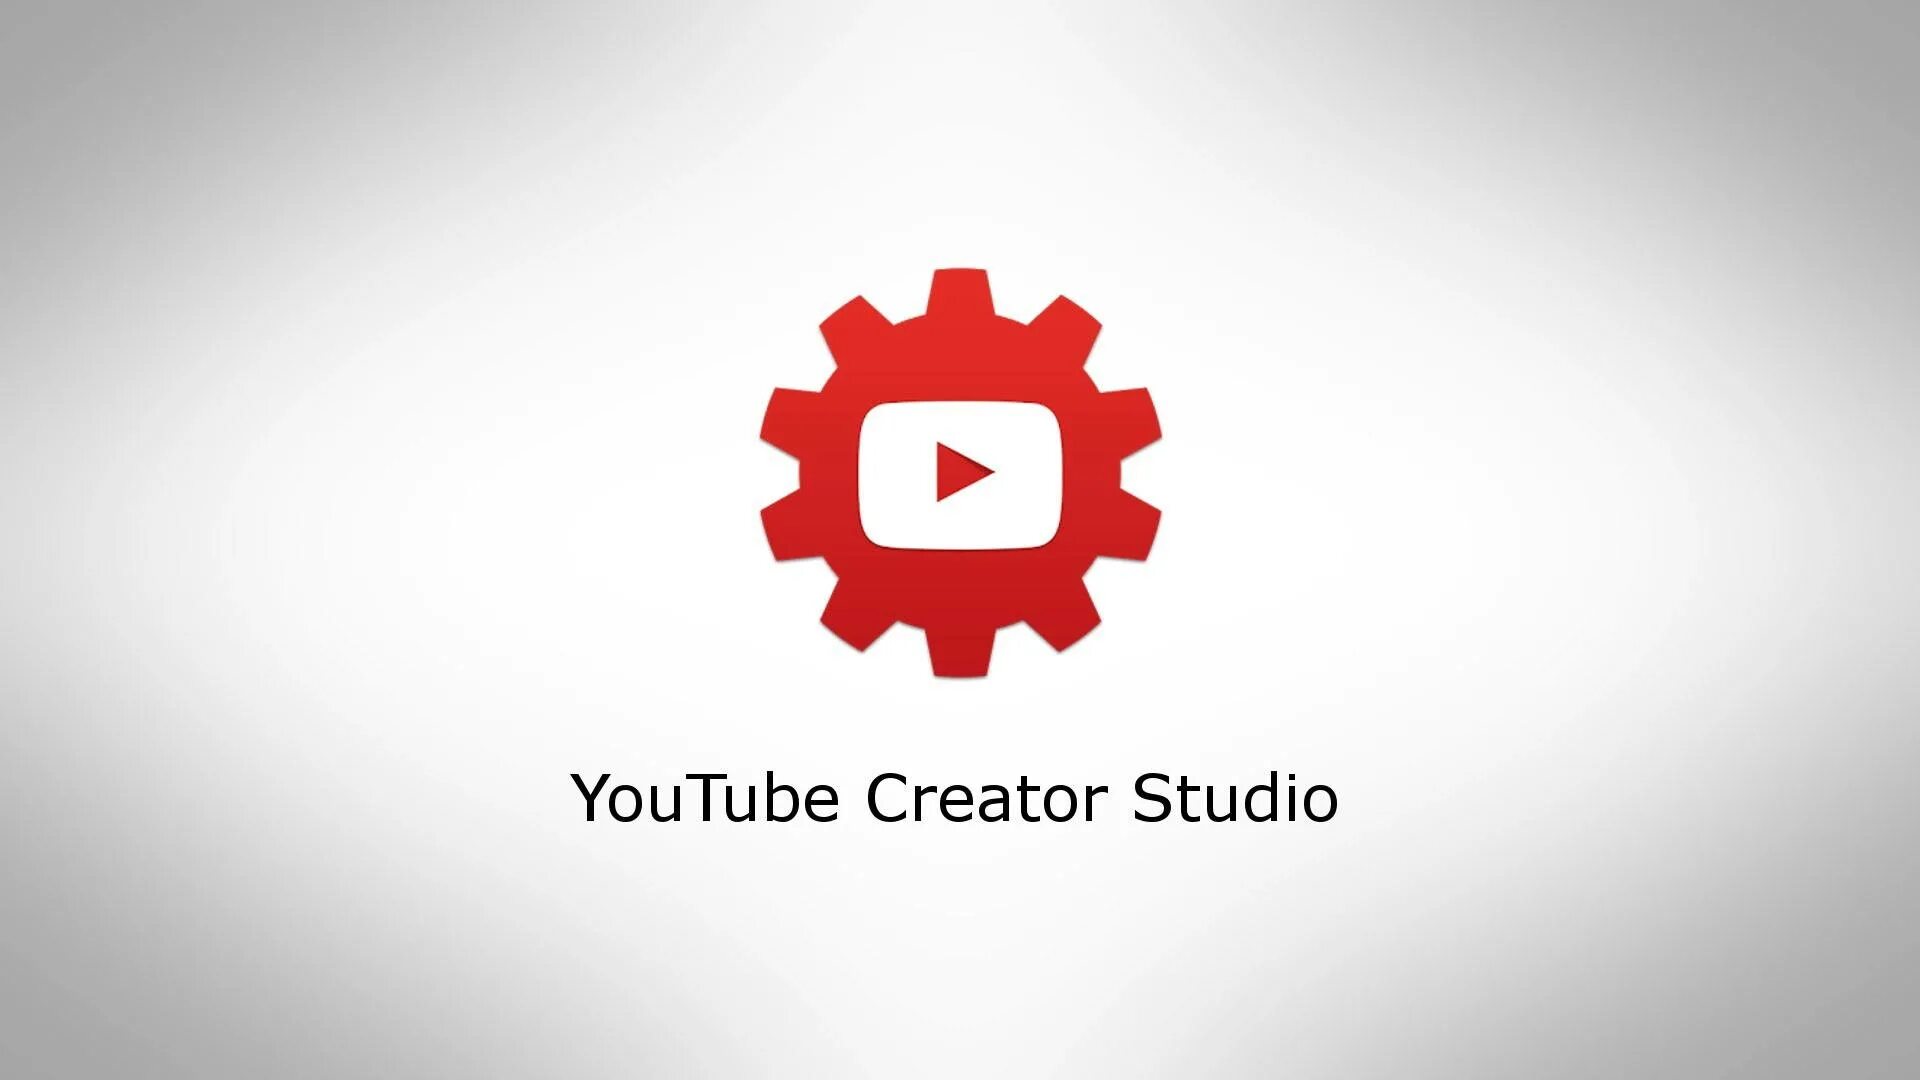 Творческая ютуб зайти. Youtube Studio. Ютуб студия. Youtube creator Studio. Творческая студия ютуб.